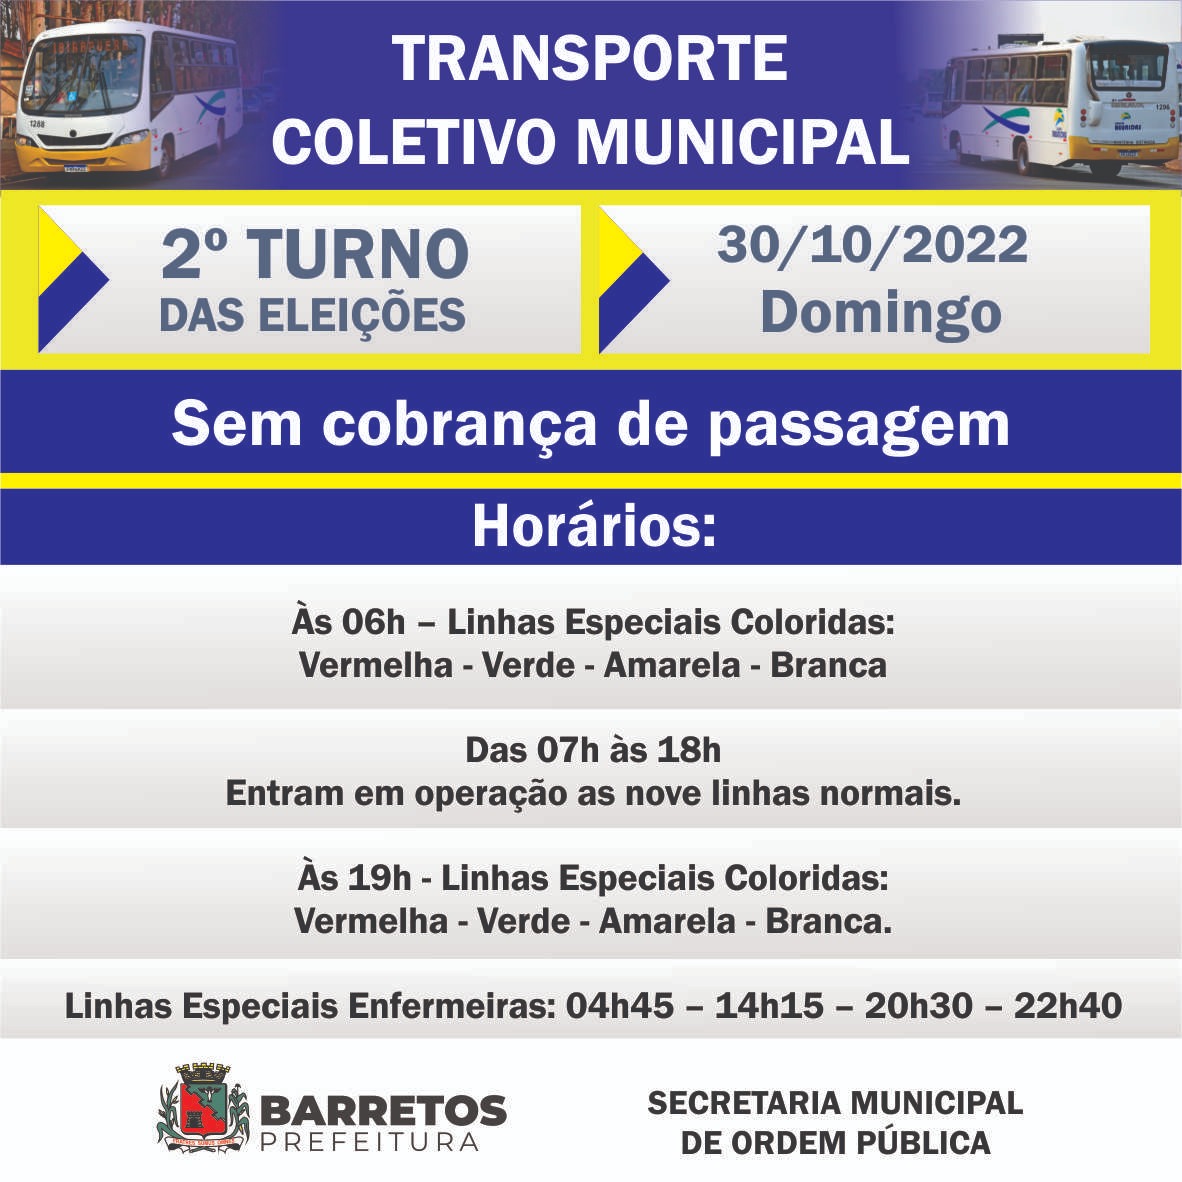 Eleitores da Estância Turística de Barretos terão transporte coletivo gratuito no 2° turno